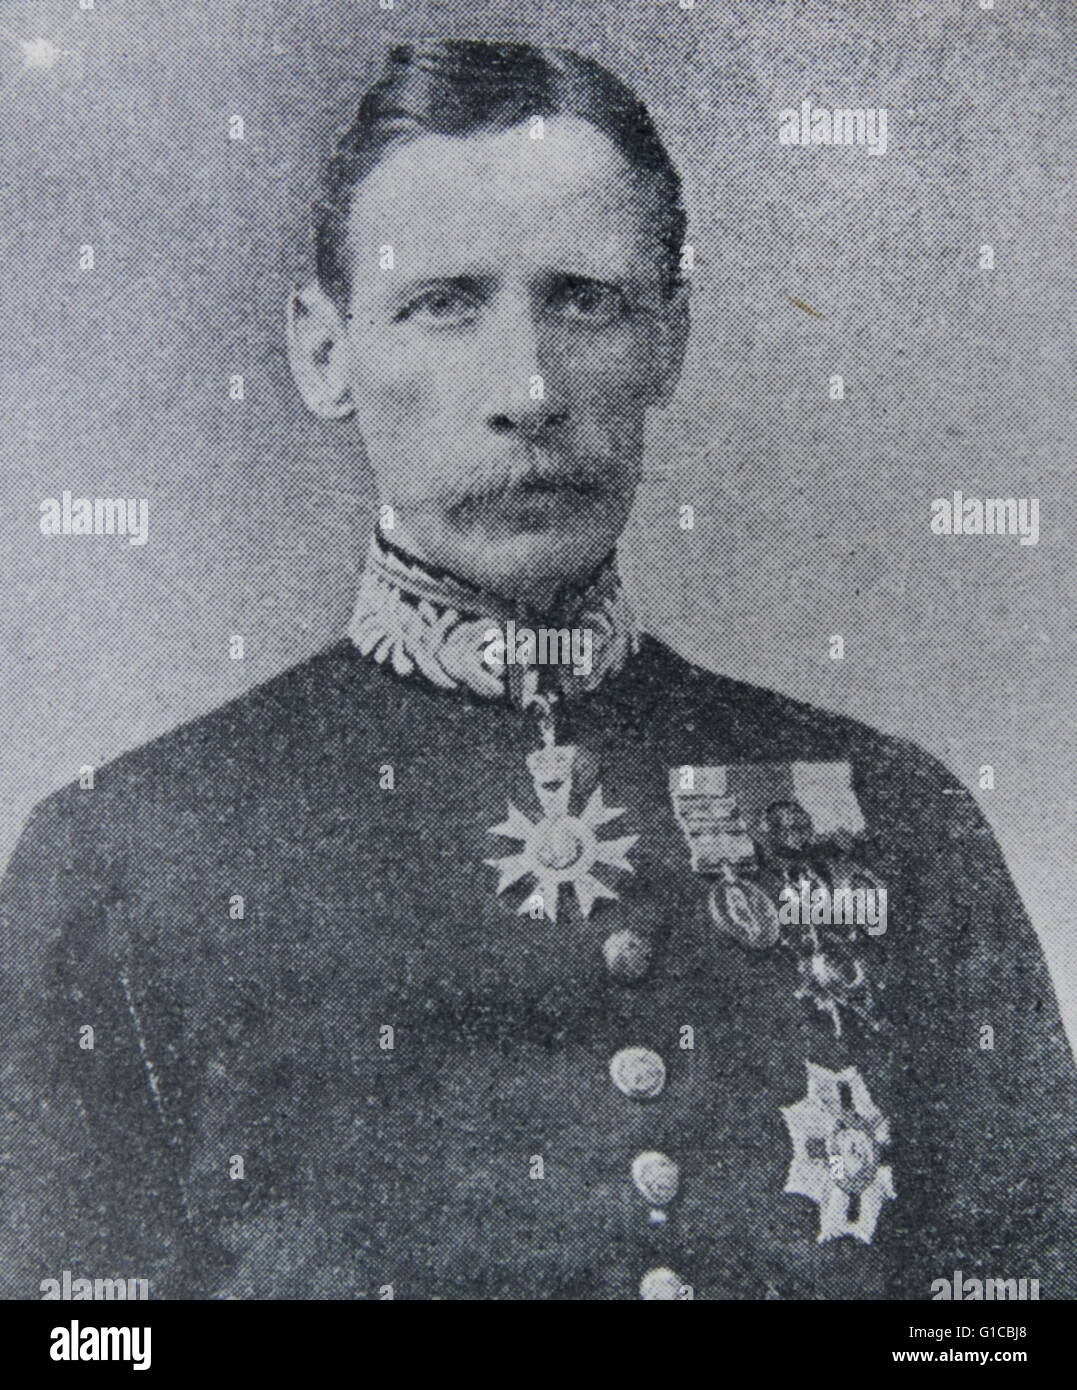 Retrato fotográfico de Claude Maxwell MacDonald (1852-1915), diplomático británico, mejor conocido por su servicio en China y Japón. Fecha 1890 Foto de stock